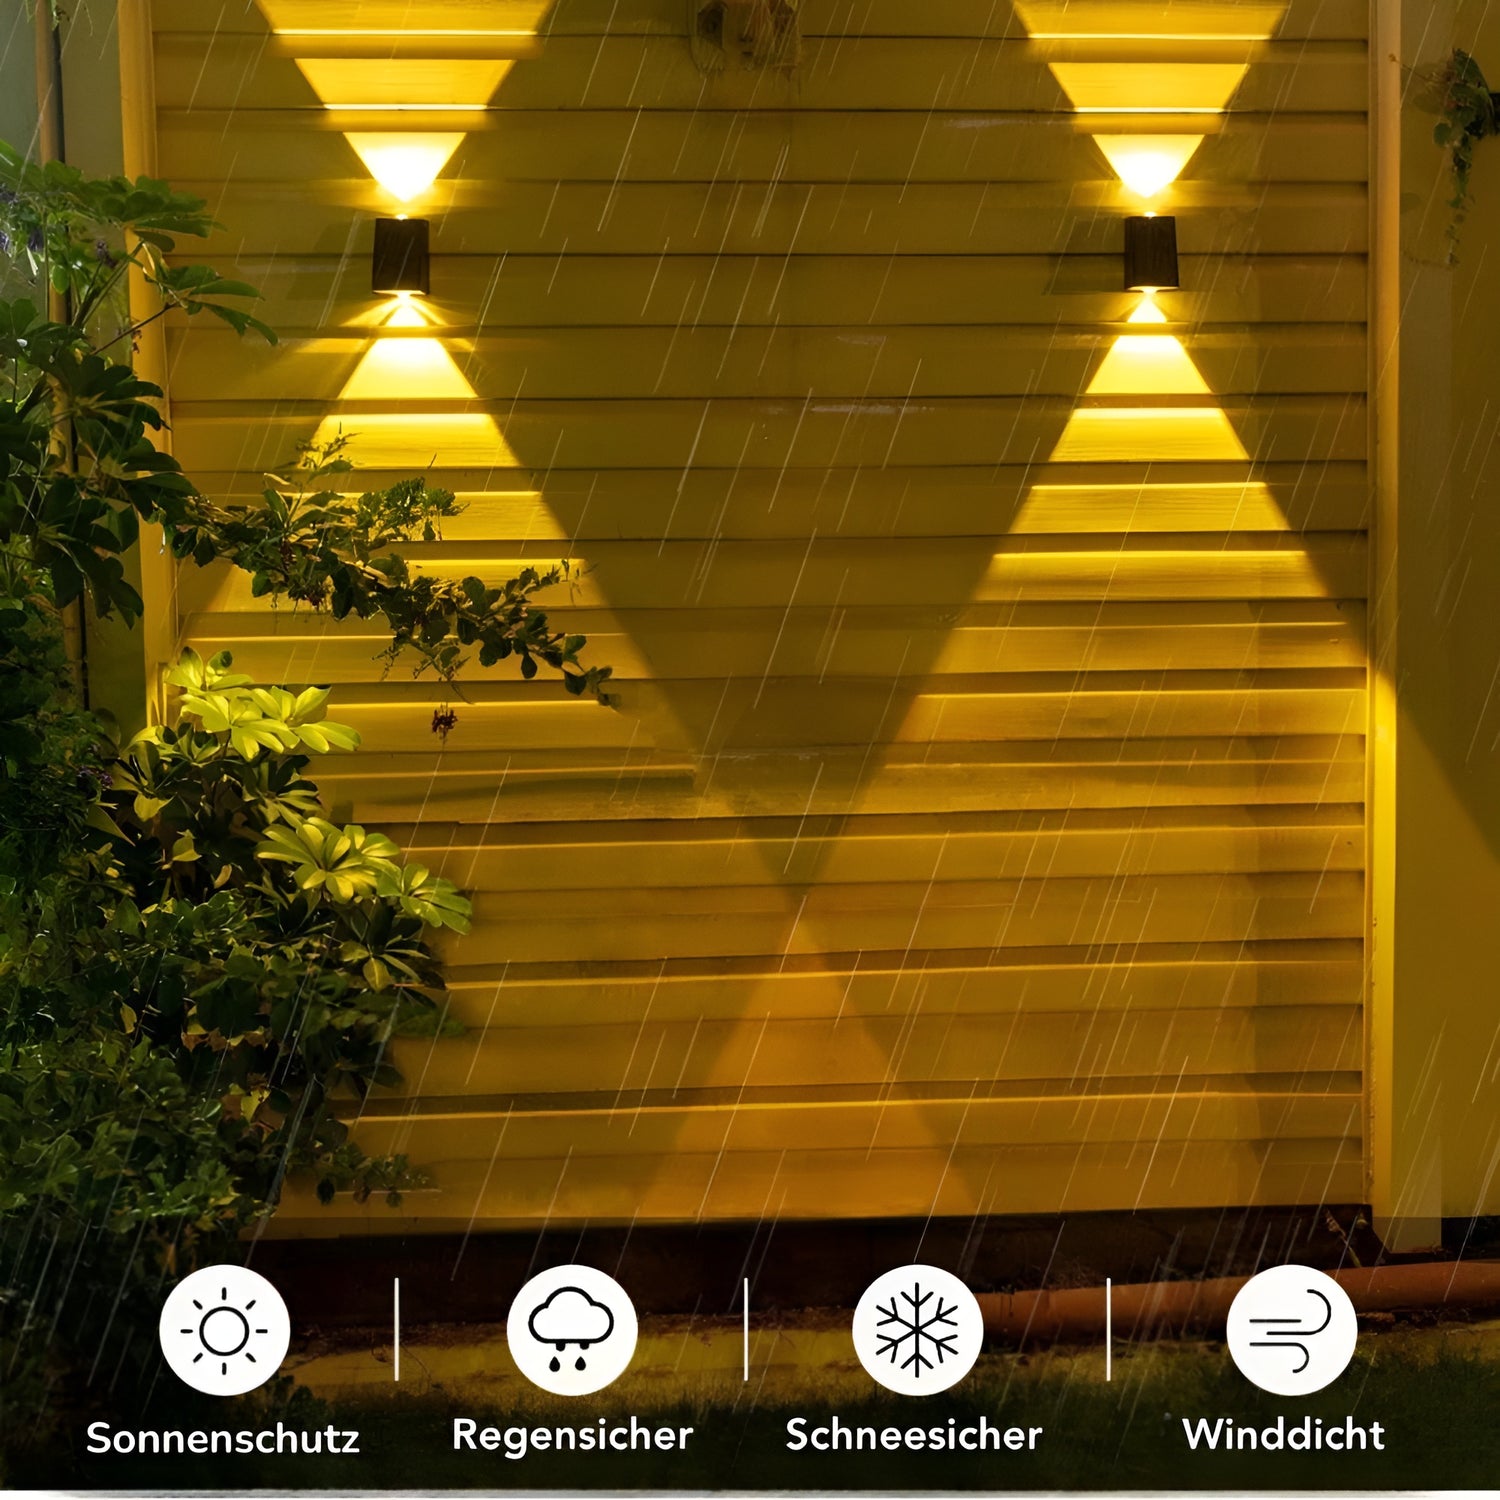 Kabellose LED Solar Upside Down Lampen - Schaffe die perfekte Atmosphäre in deinem Garten!